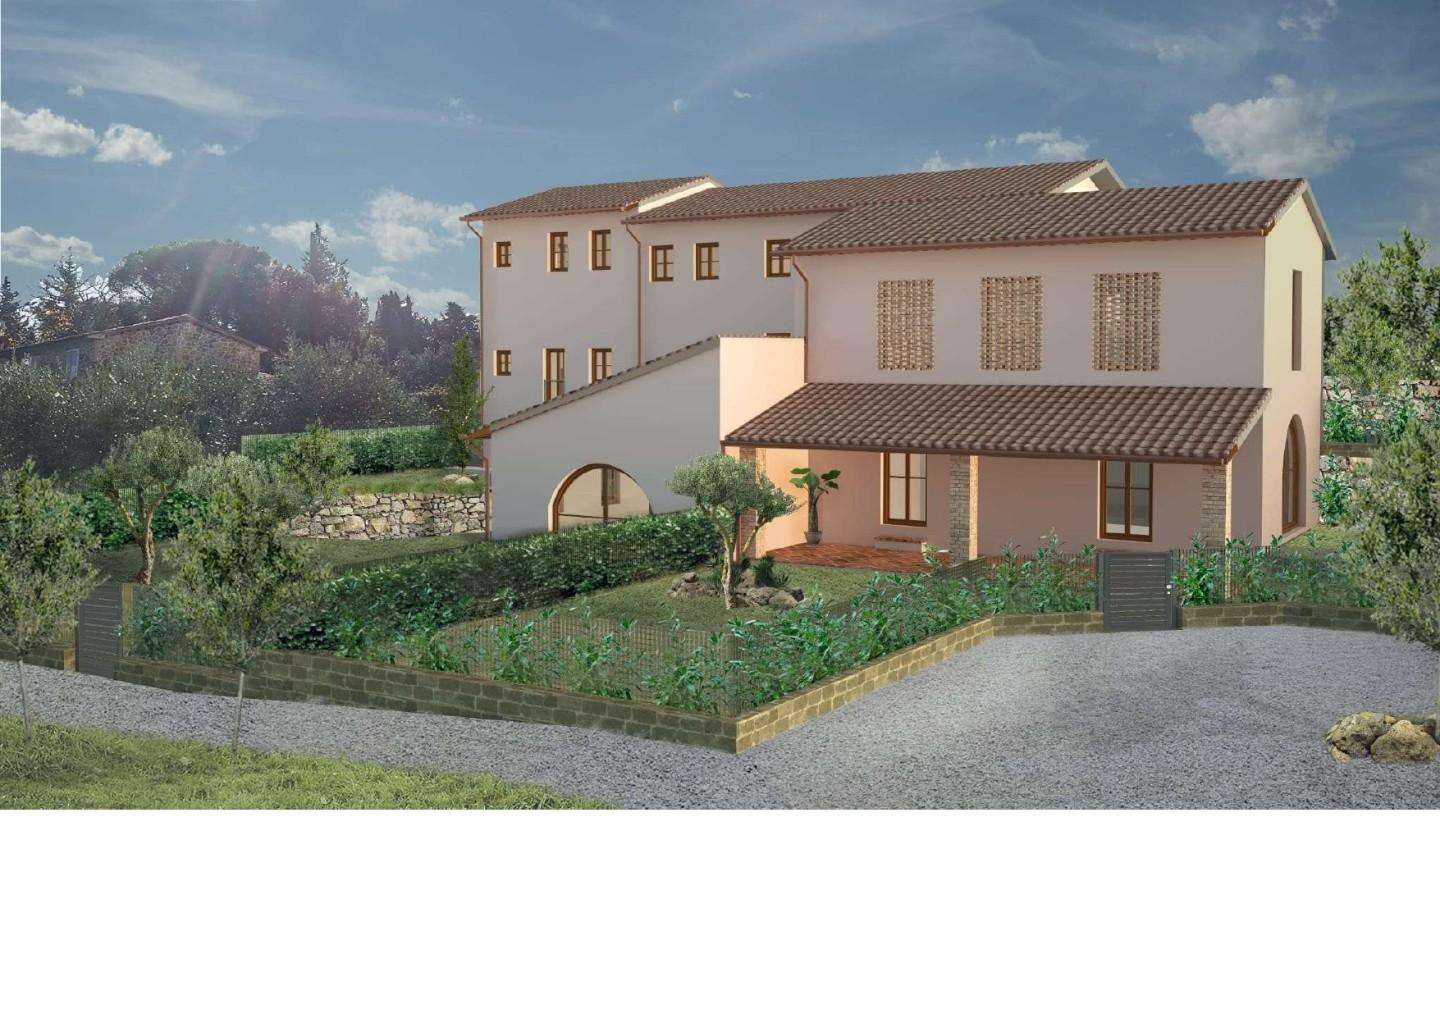 Palazzo - Stabile in Vendita a Gambassi Terme Strada Provinciale Volterrana, 5 4